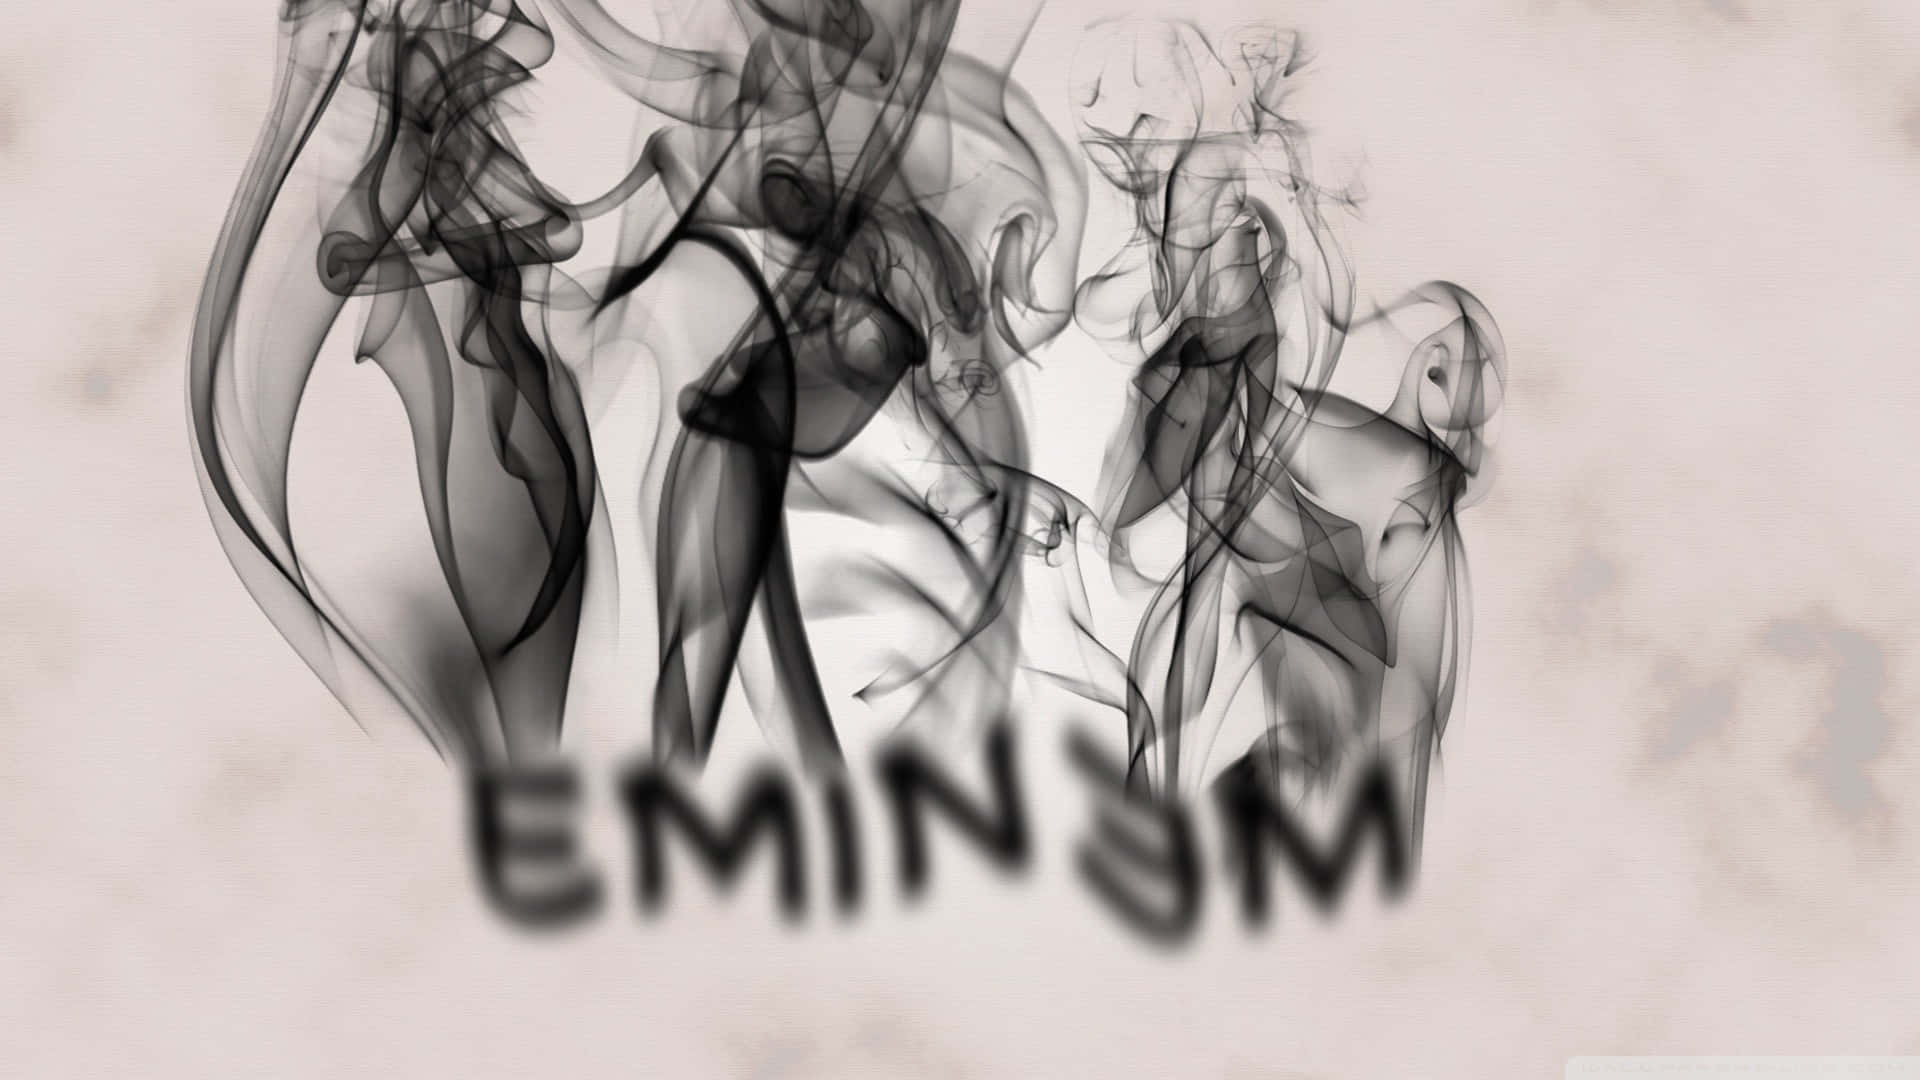 Røgagtig Eminem Rapper Pfp. Wallpaper